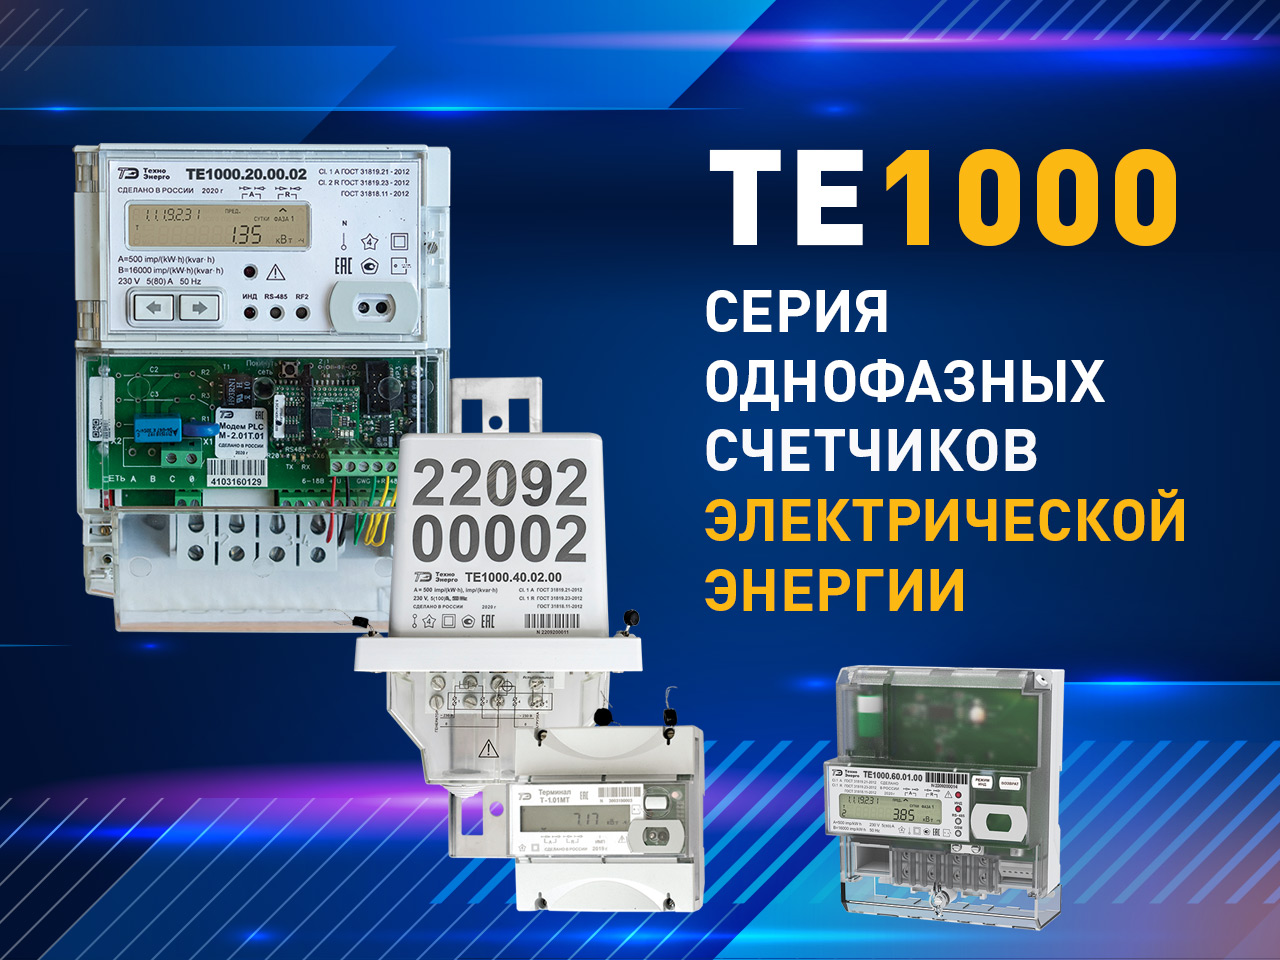 Новая серия однофазных счетчиков электроэнергии ТЕ1000